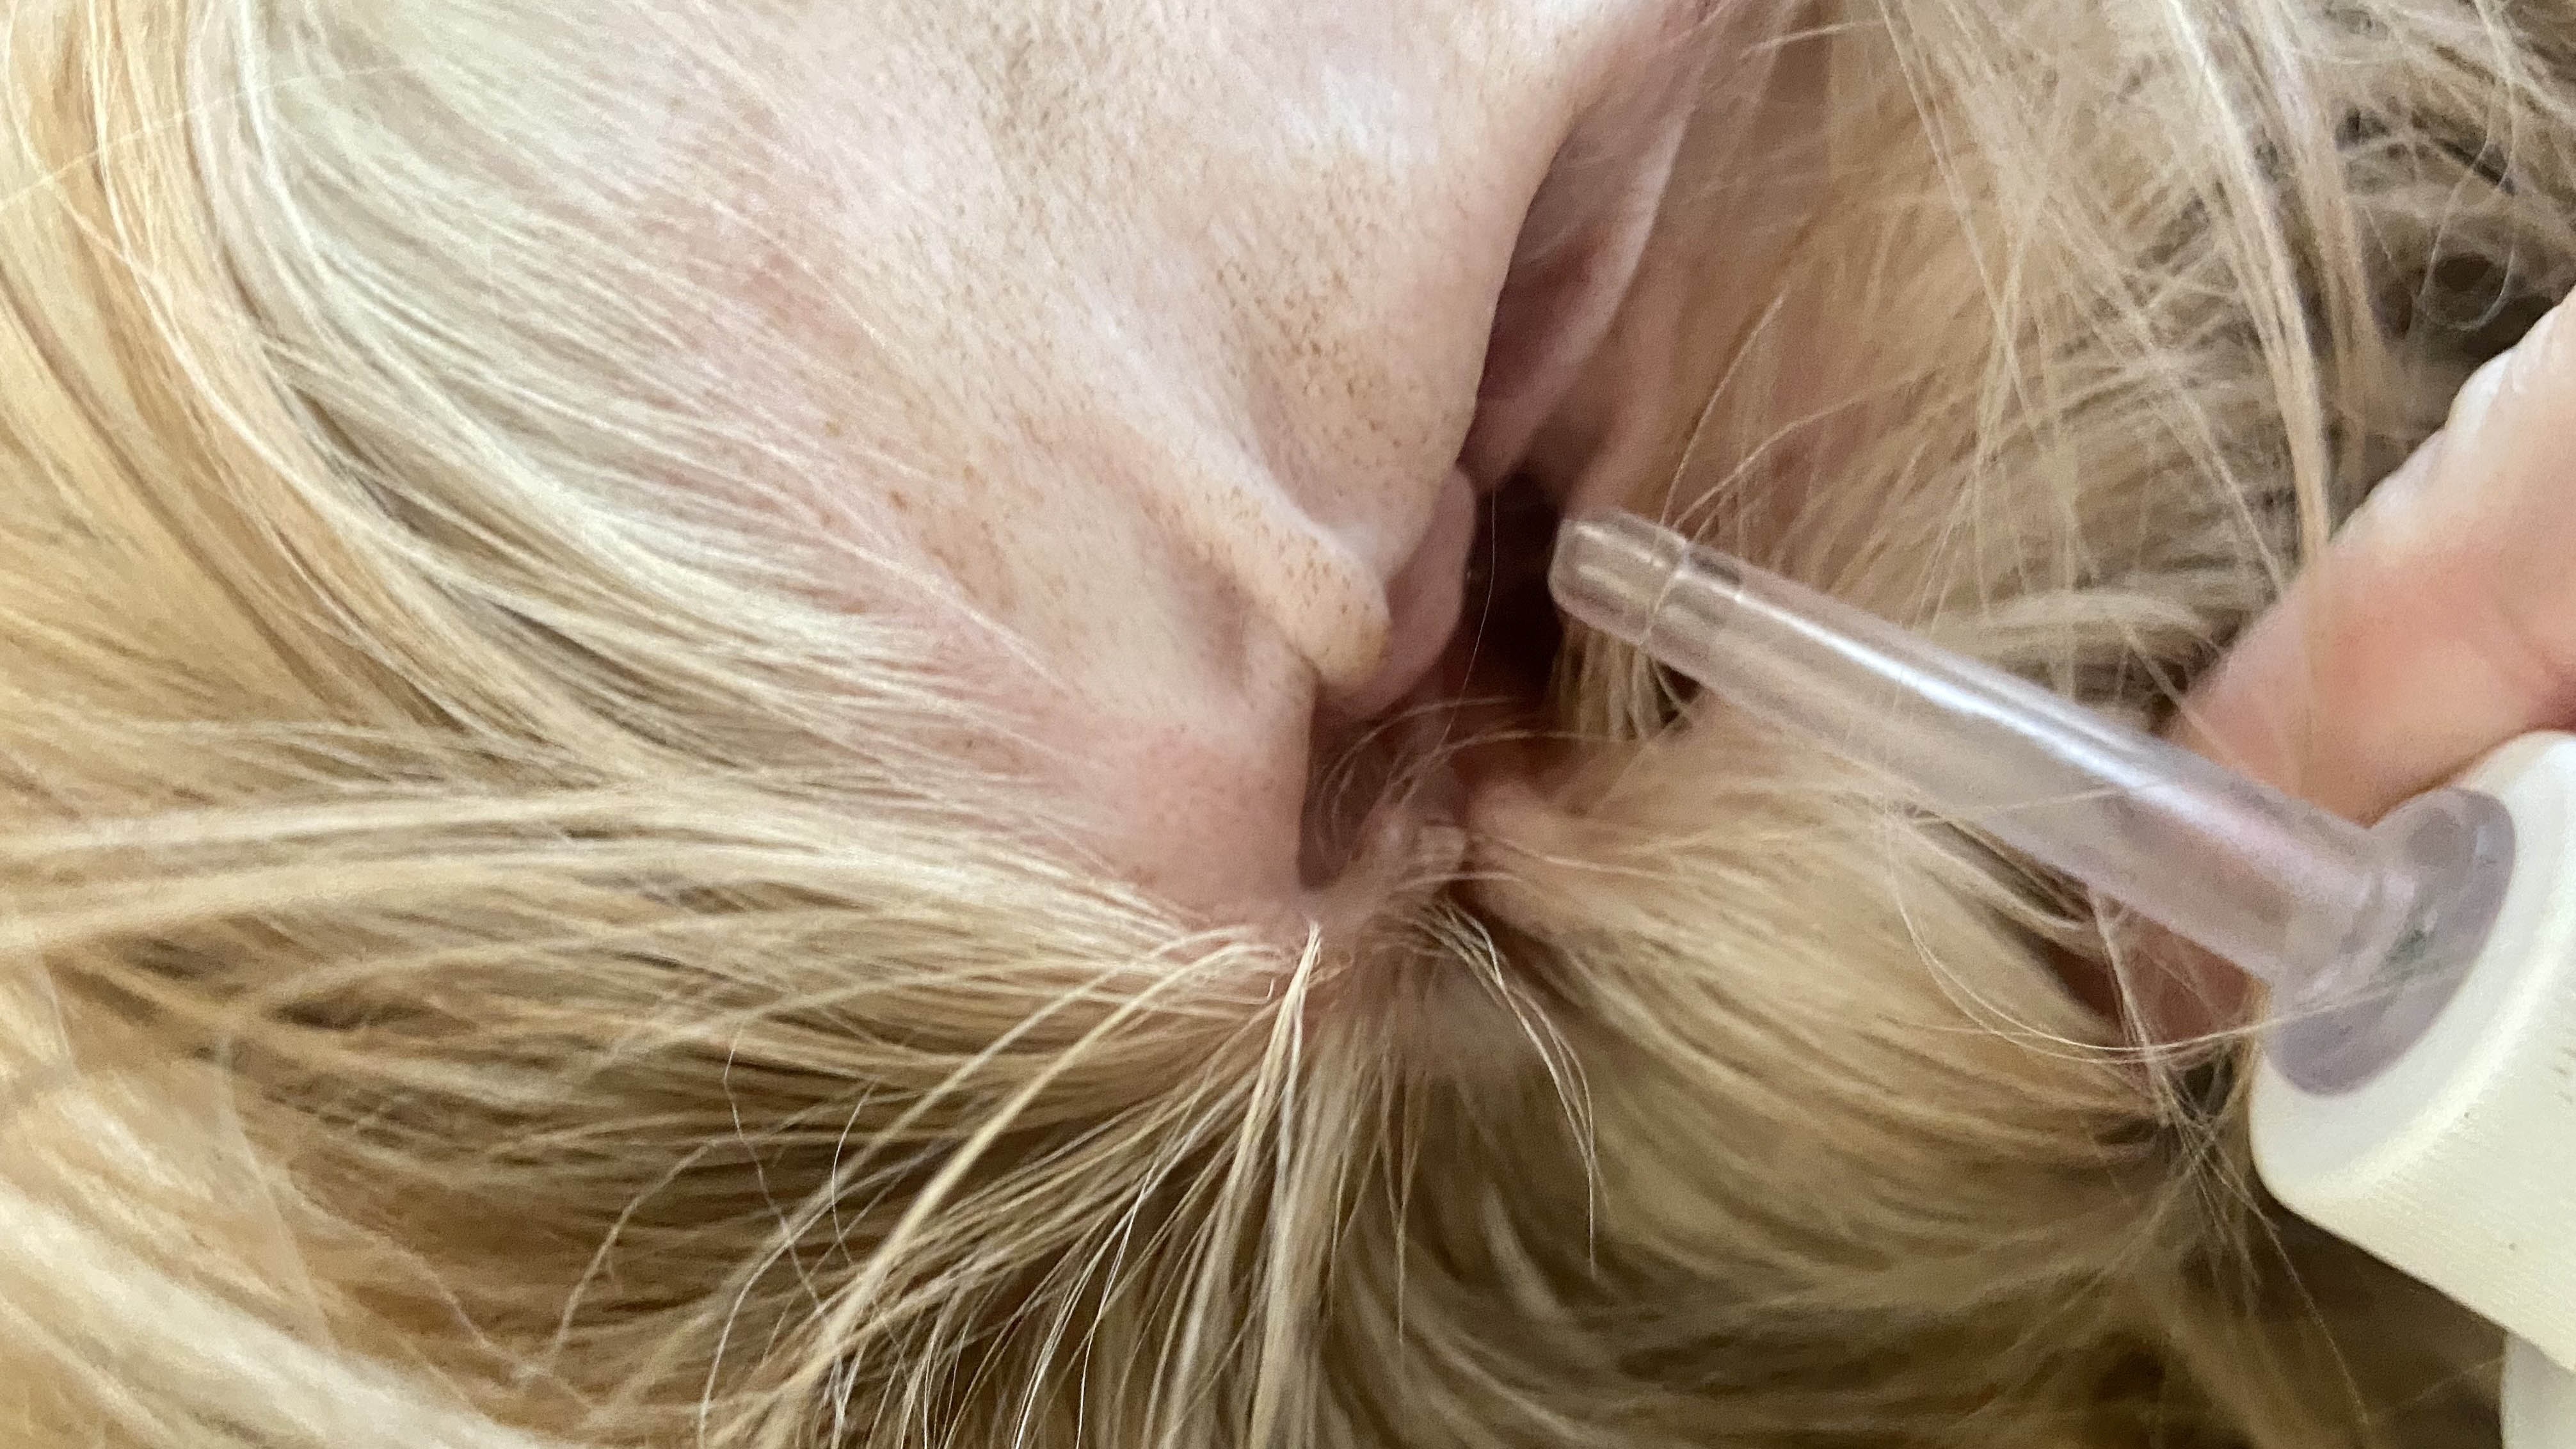 Bir köpeğin kulak kanalına uygulanan köpek kulak temizleme solüsyonu